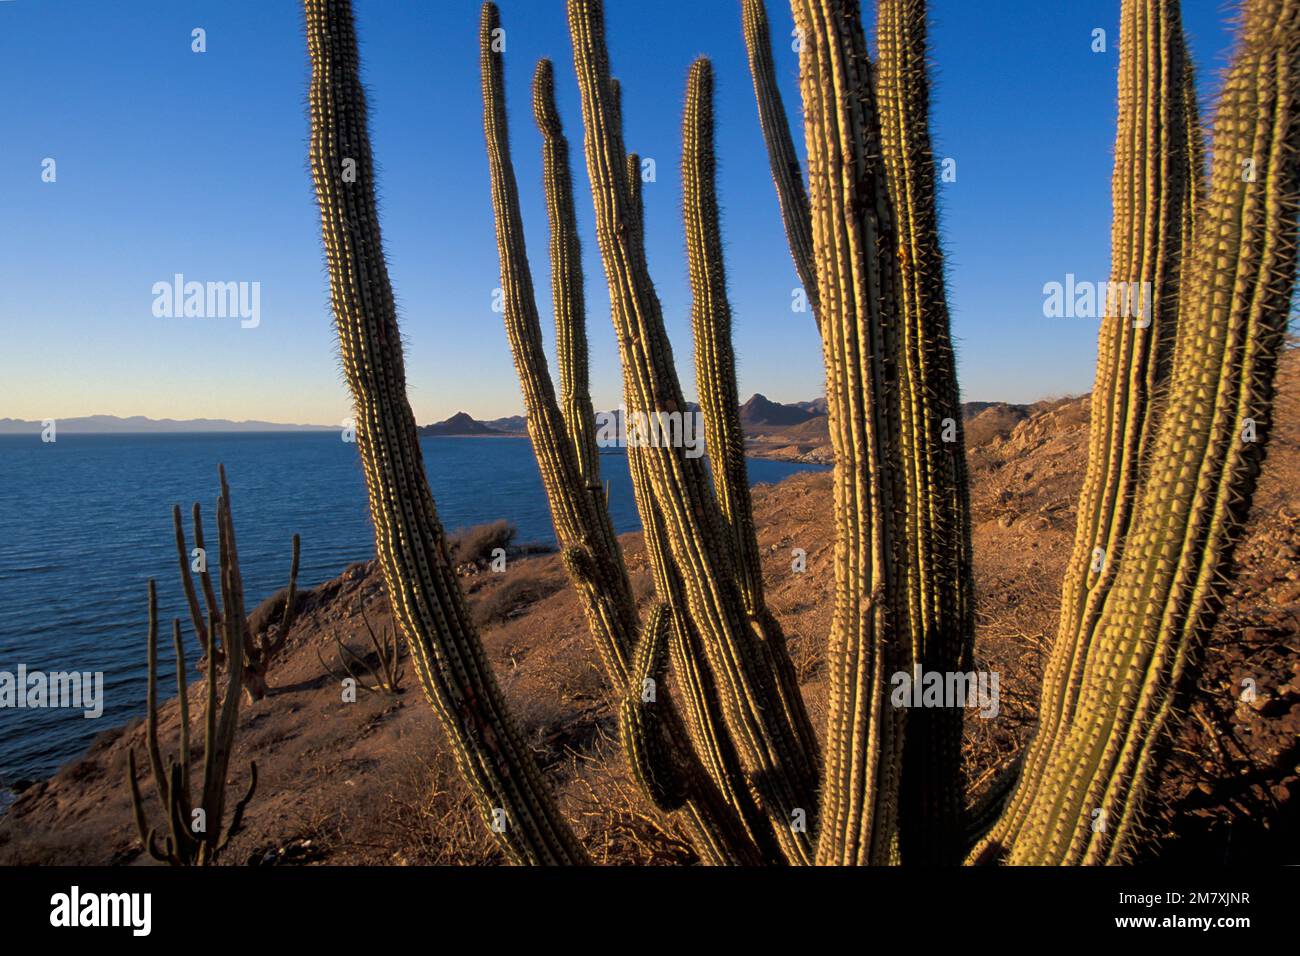 Mexico, Gulf of California, Sonora, Sea of Cortez, Kino Nuevo, coastline with cactus Stock Photo